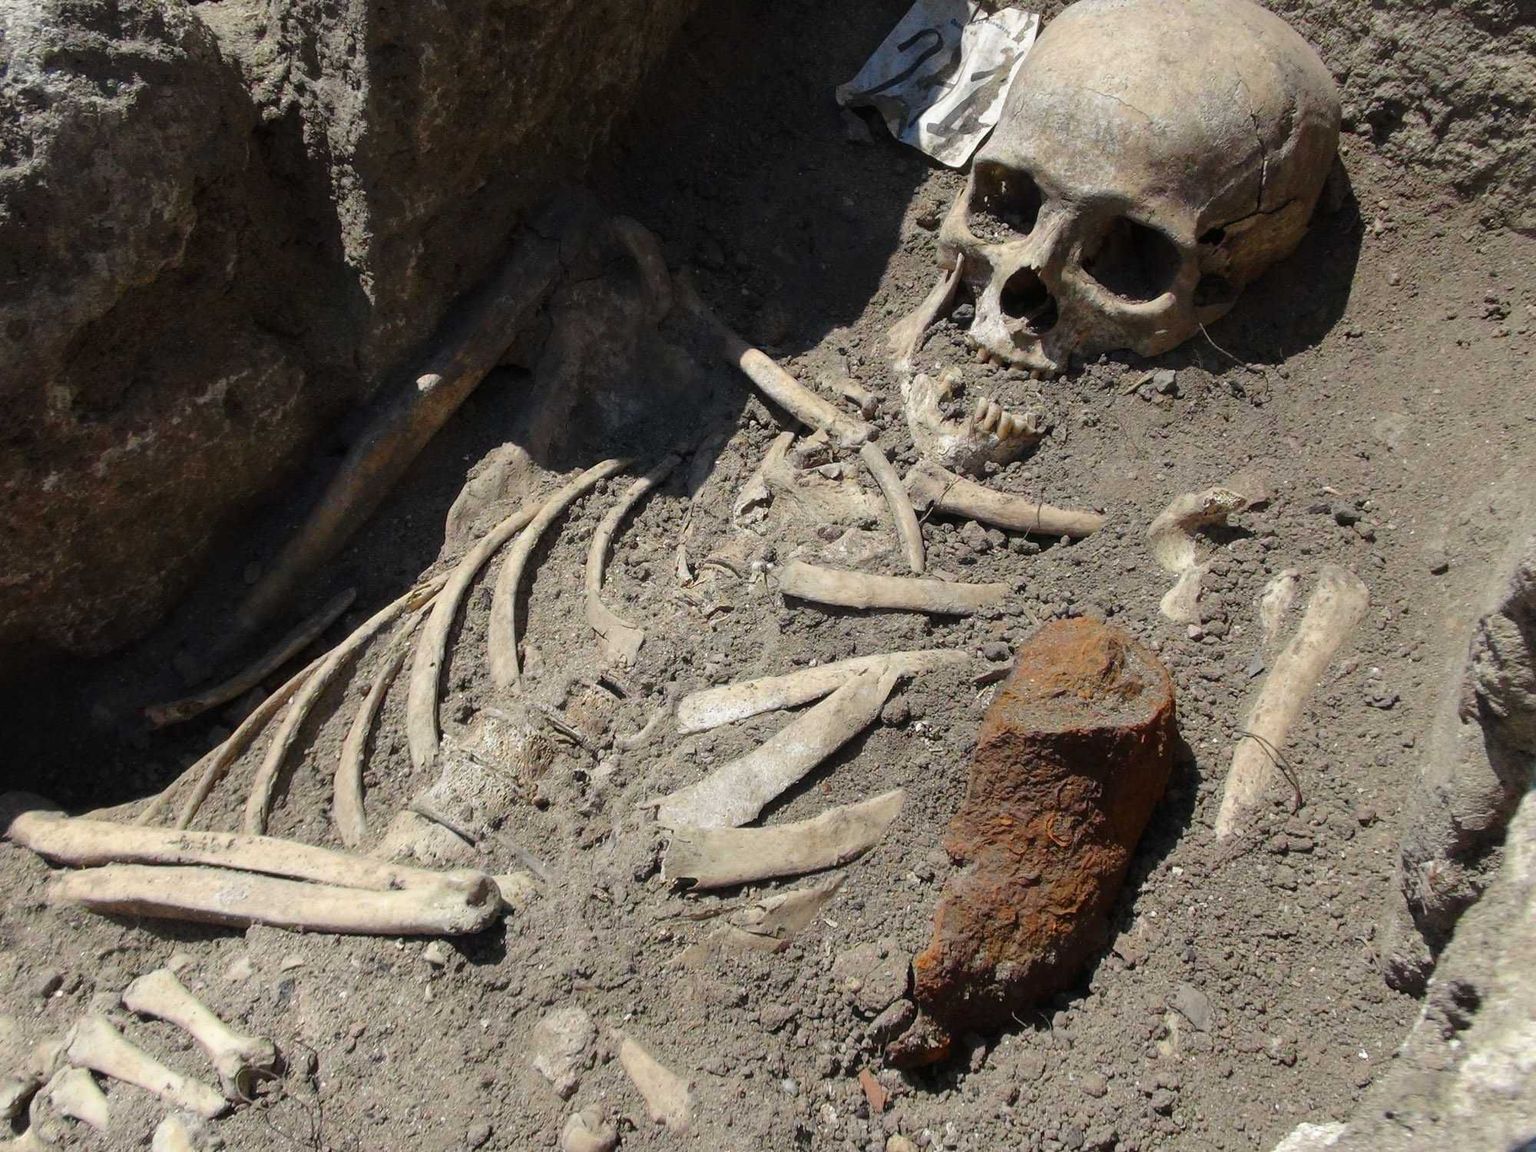 Vampiiriks olemises kahtlustatu skelett, mis leiti Bulgaariast.